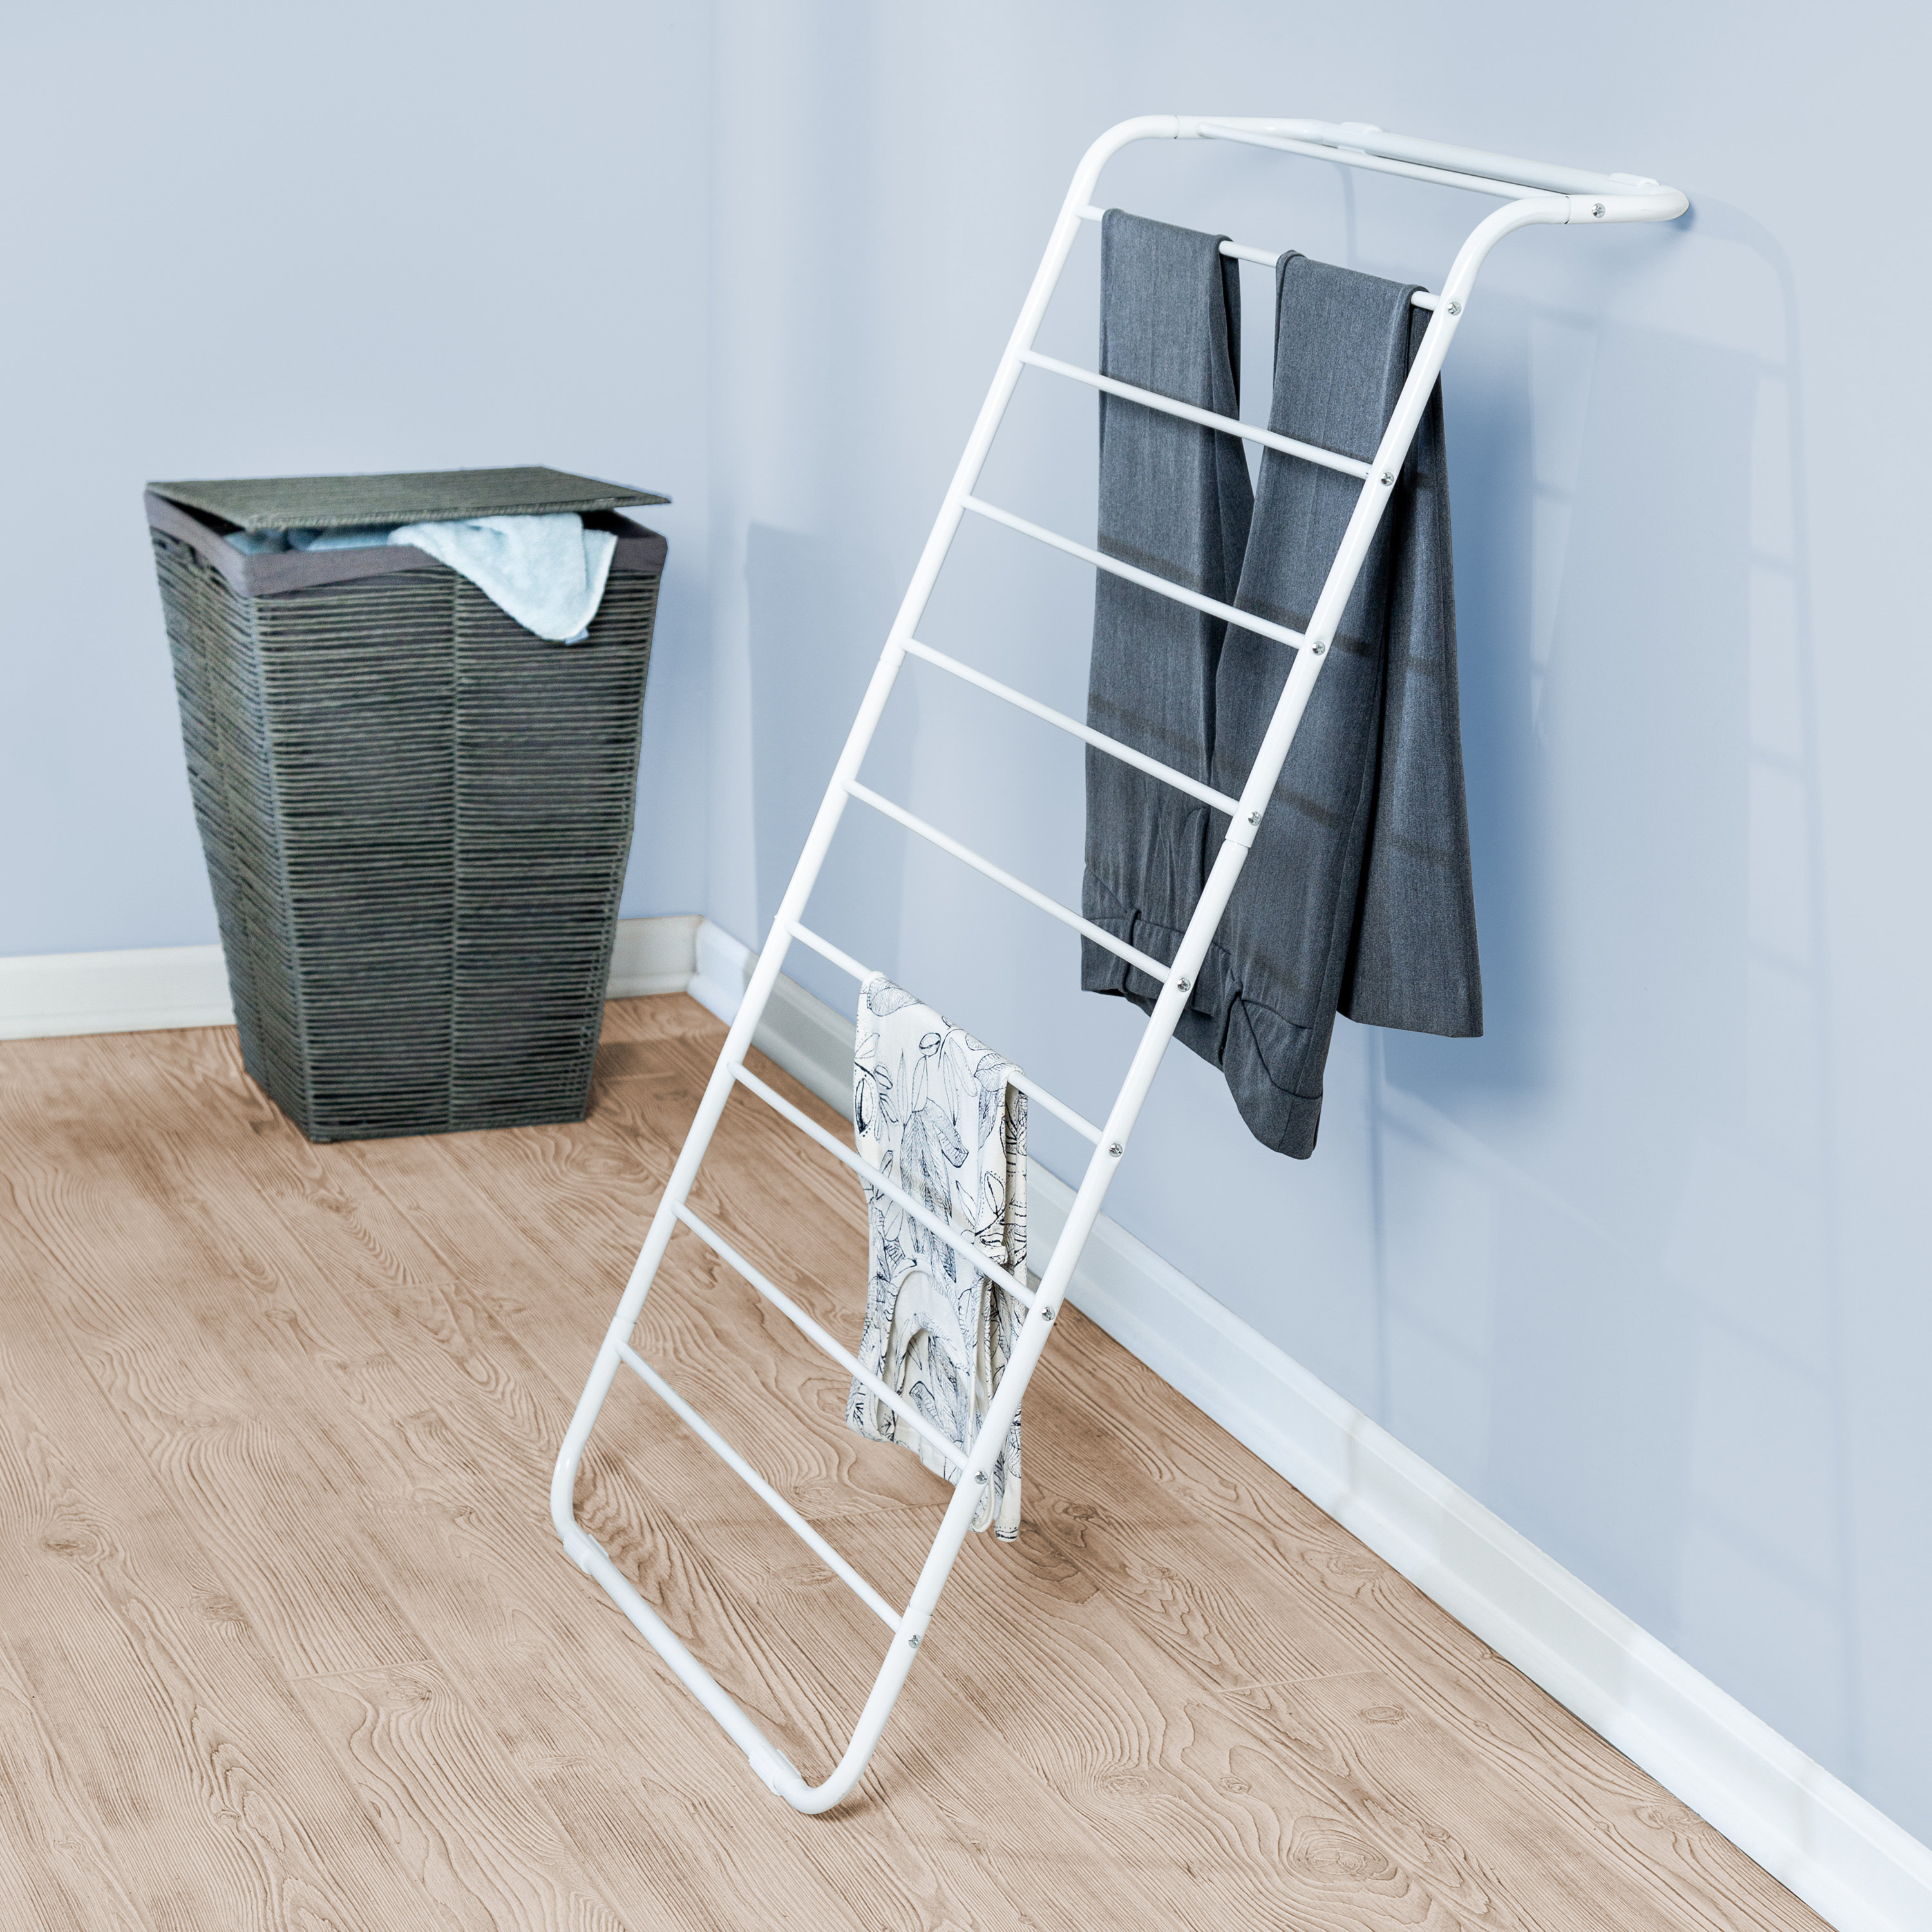 clothes drying rack qvc